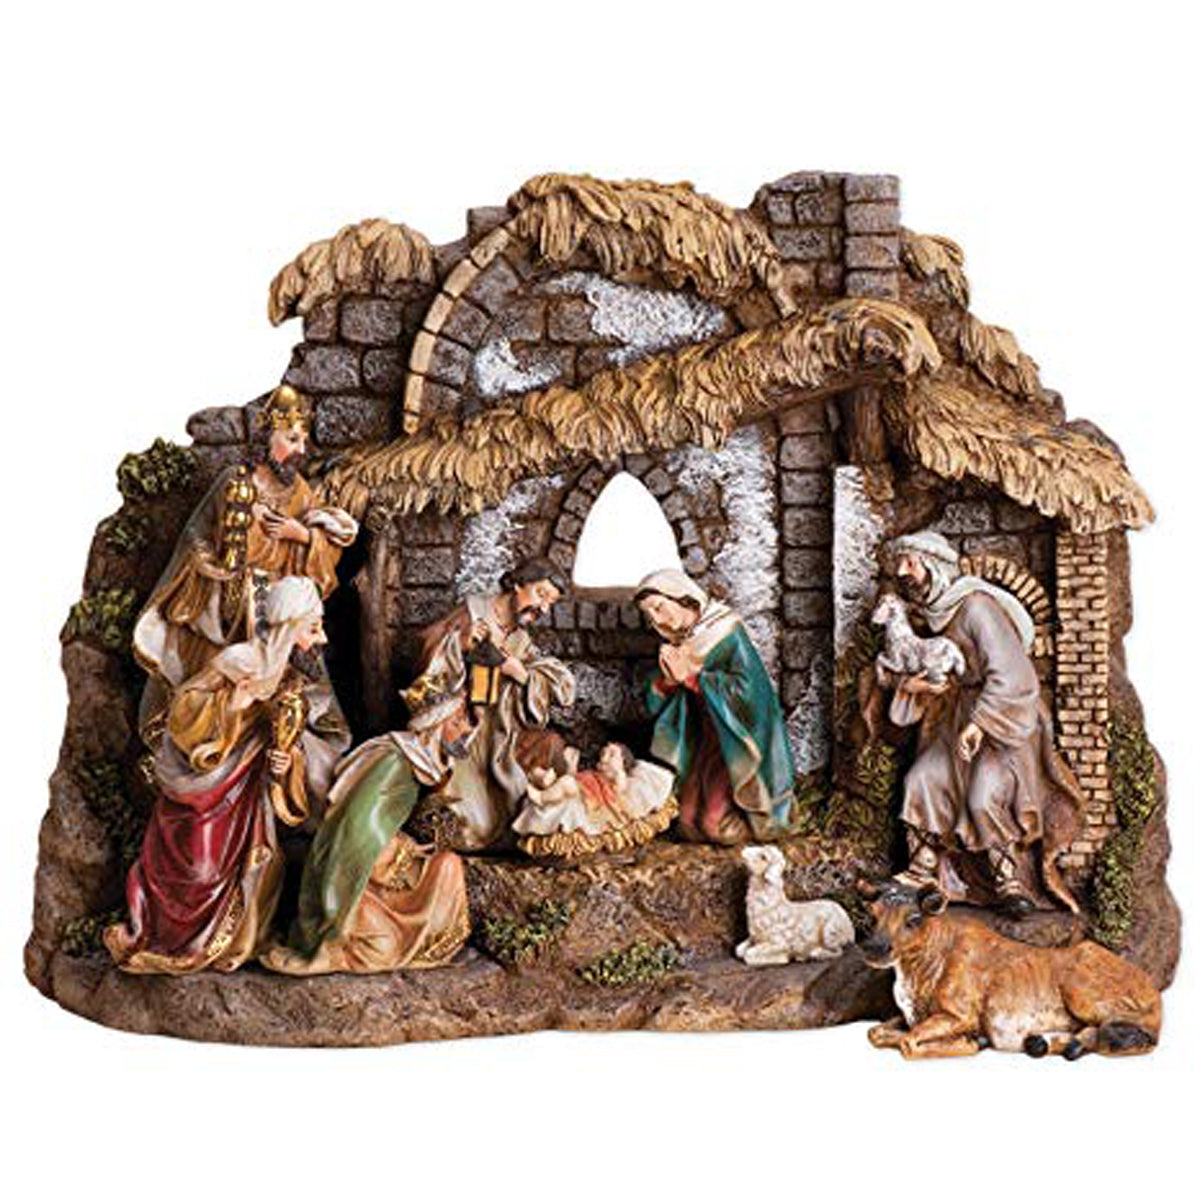 Joseph's Studio Nativity with Stable, 10 pc